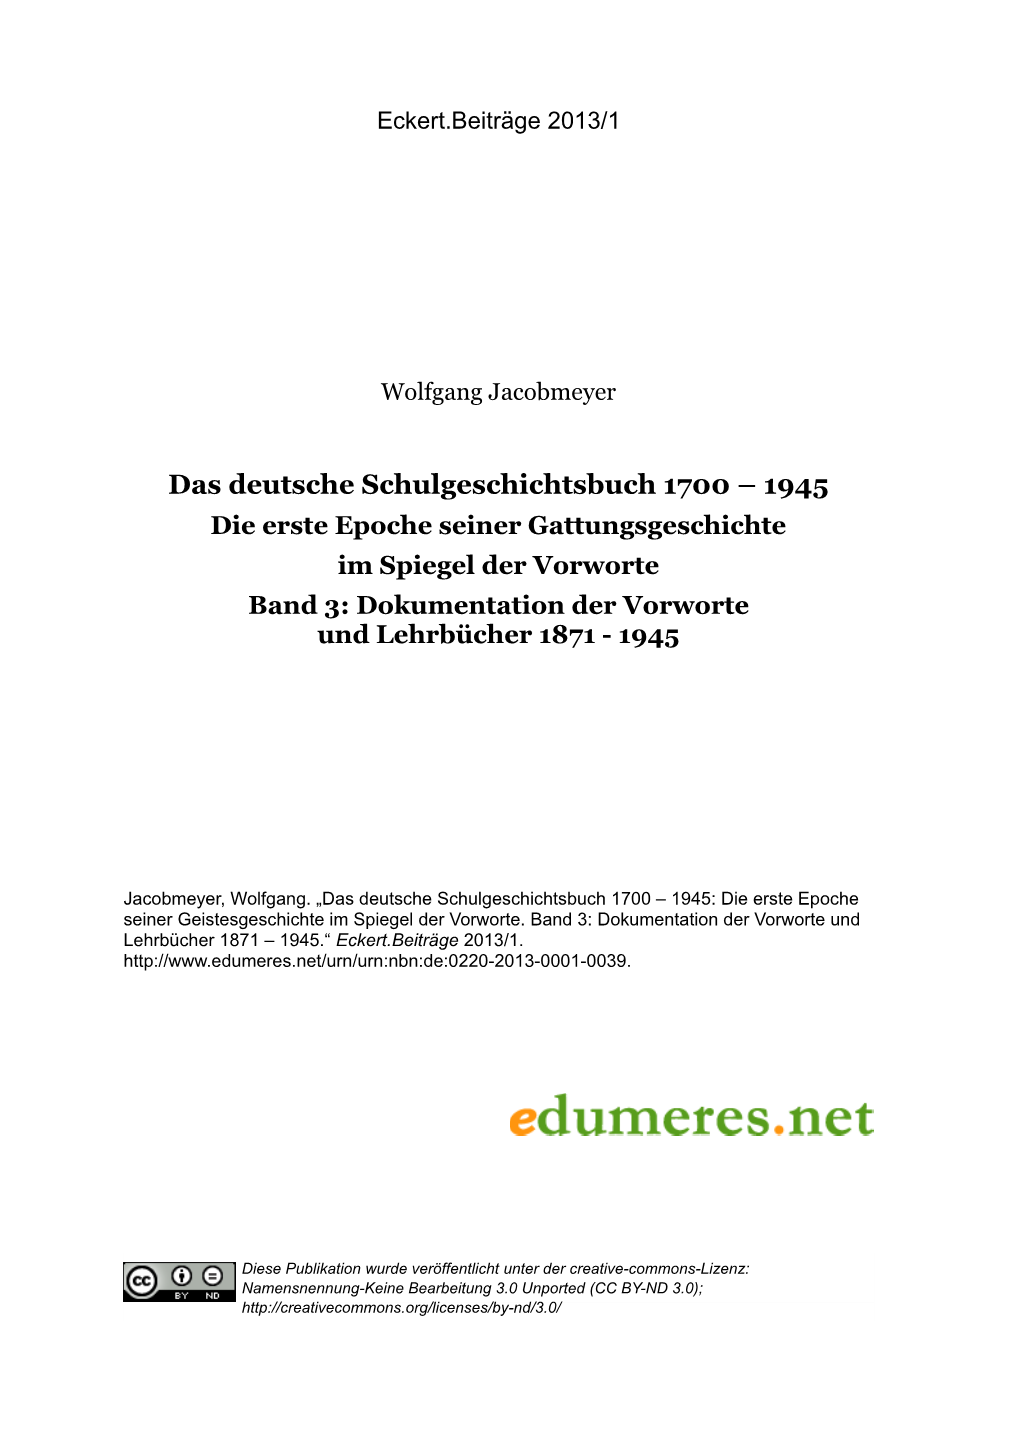 Das Deutsche Schulgeschichtsbuch 1700